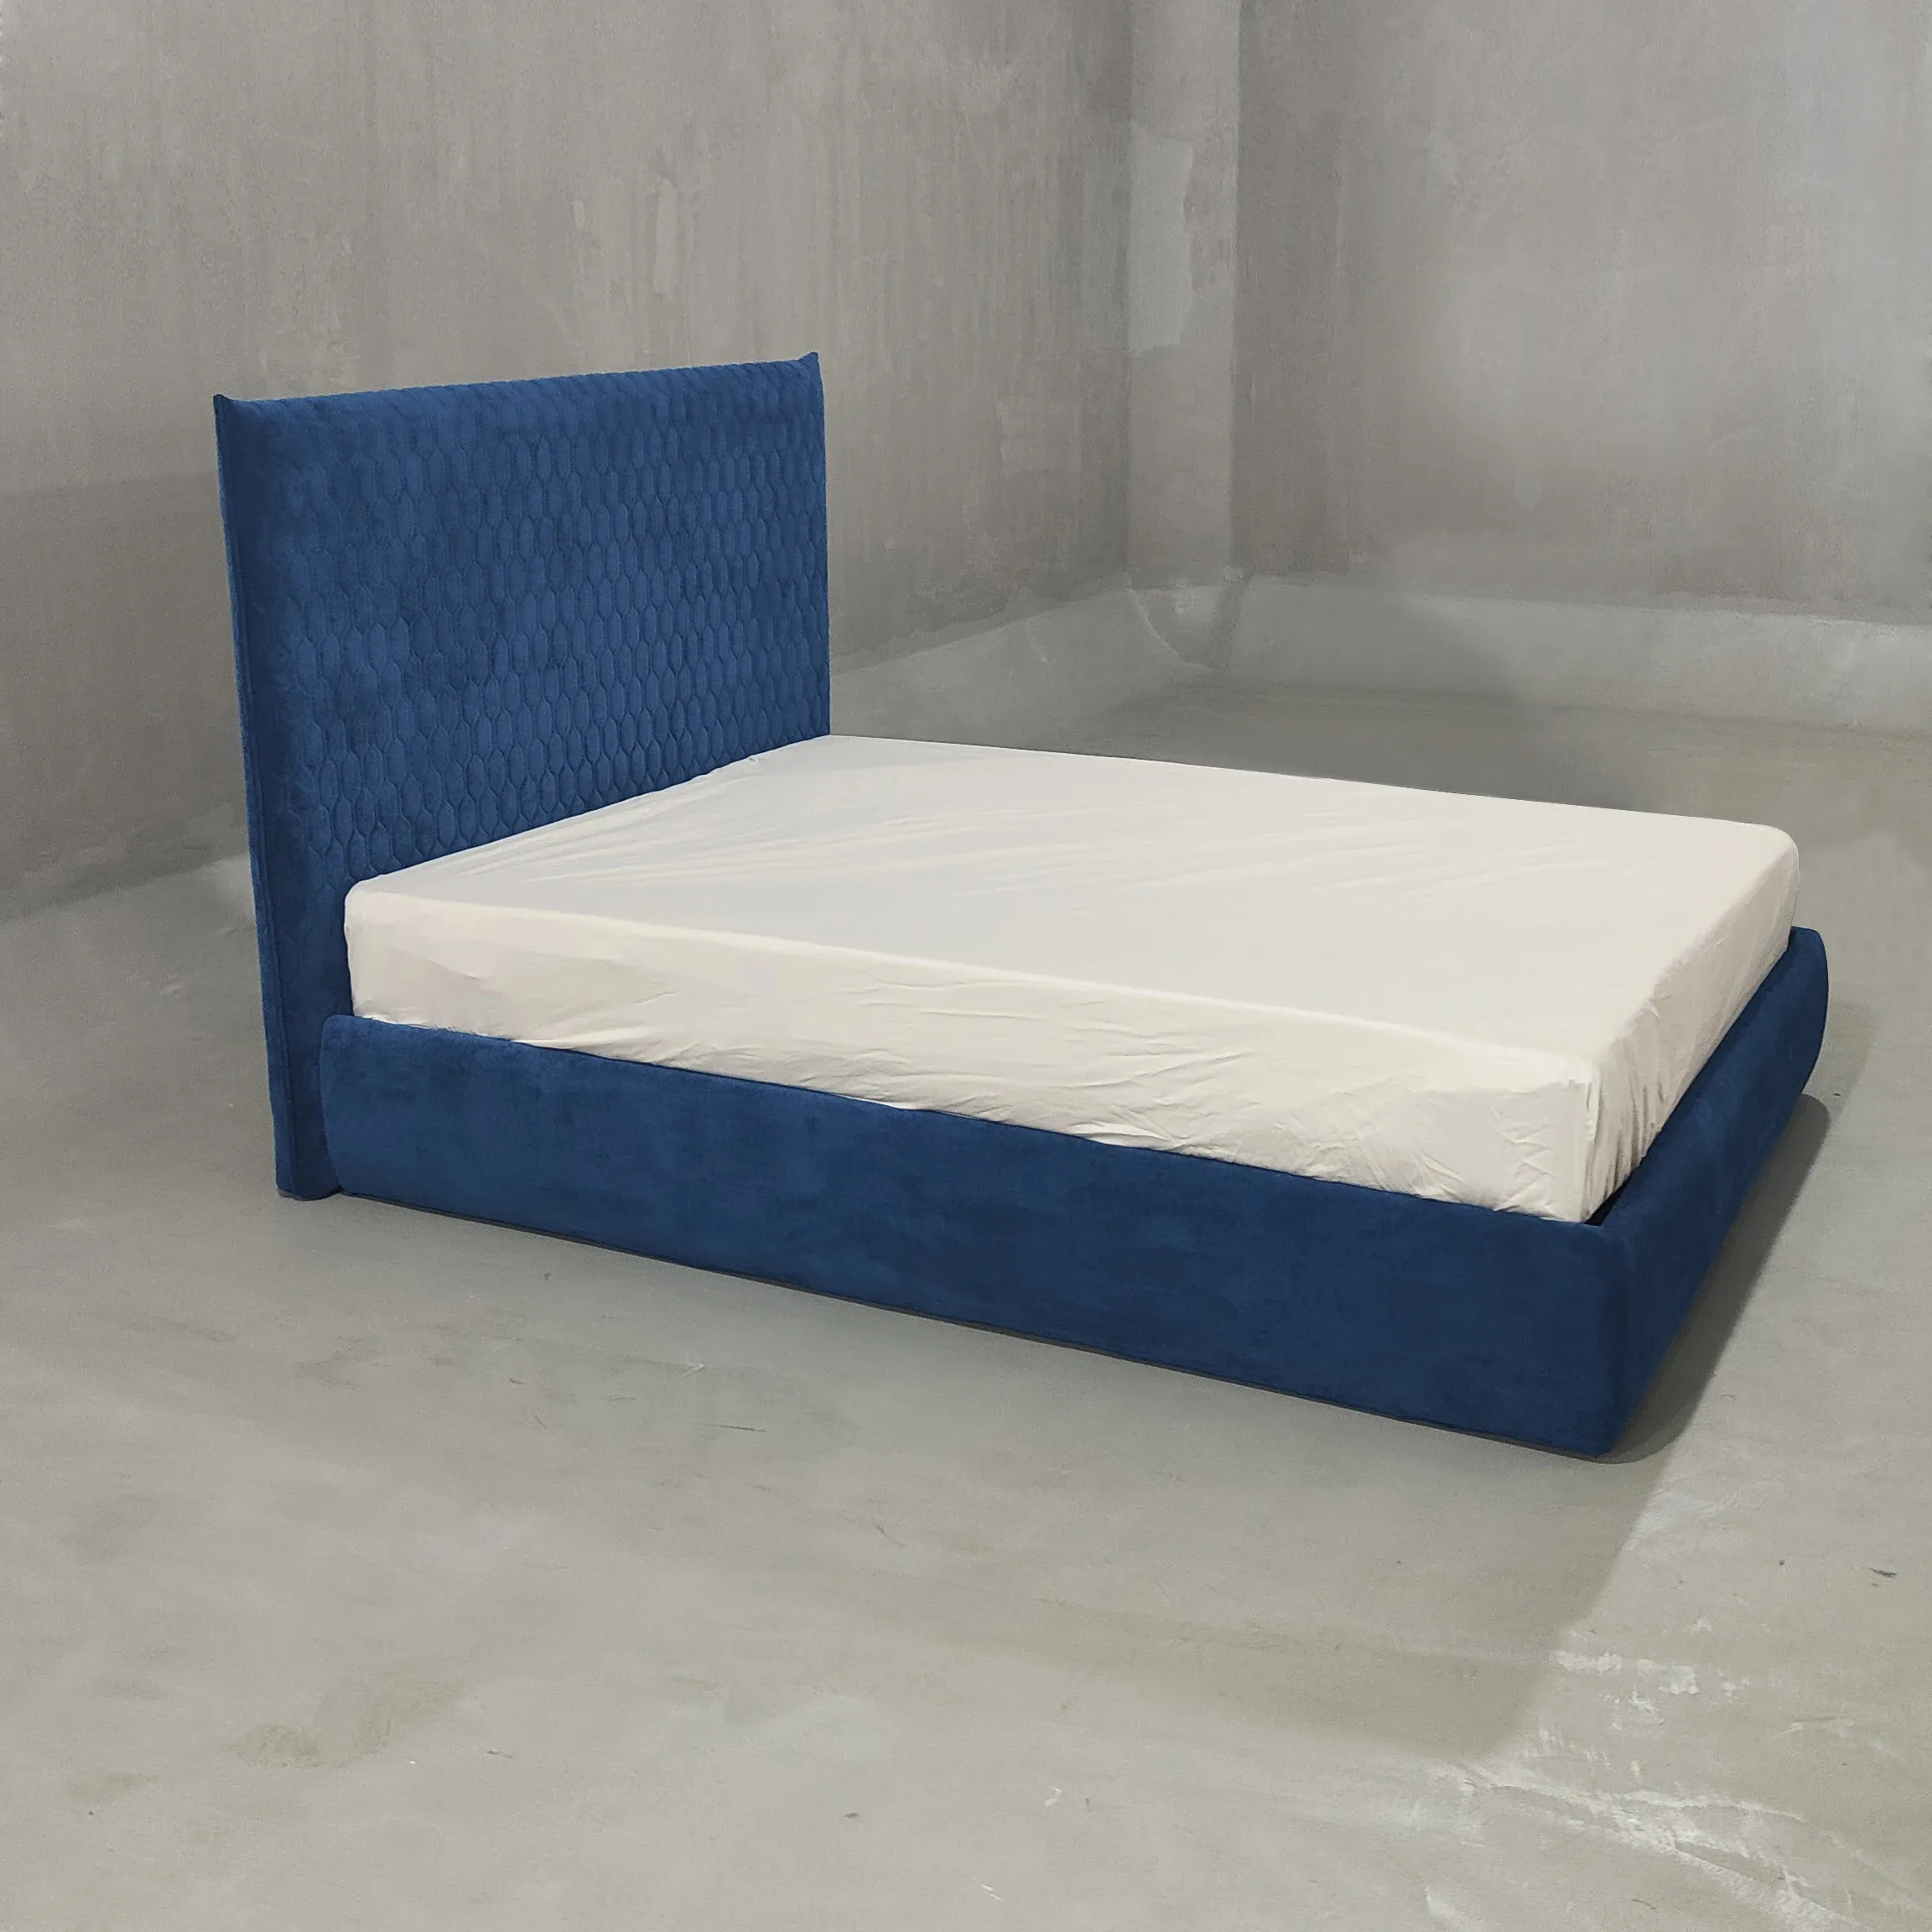 AJJ-BG025 de meubles modernes simples haut de gamme sur mesure, lit en cuir, lit double, ensemble de lit king de 1.8 mètres